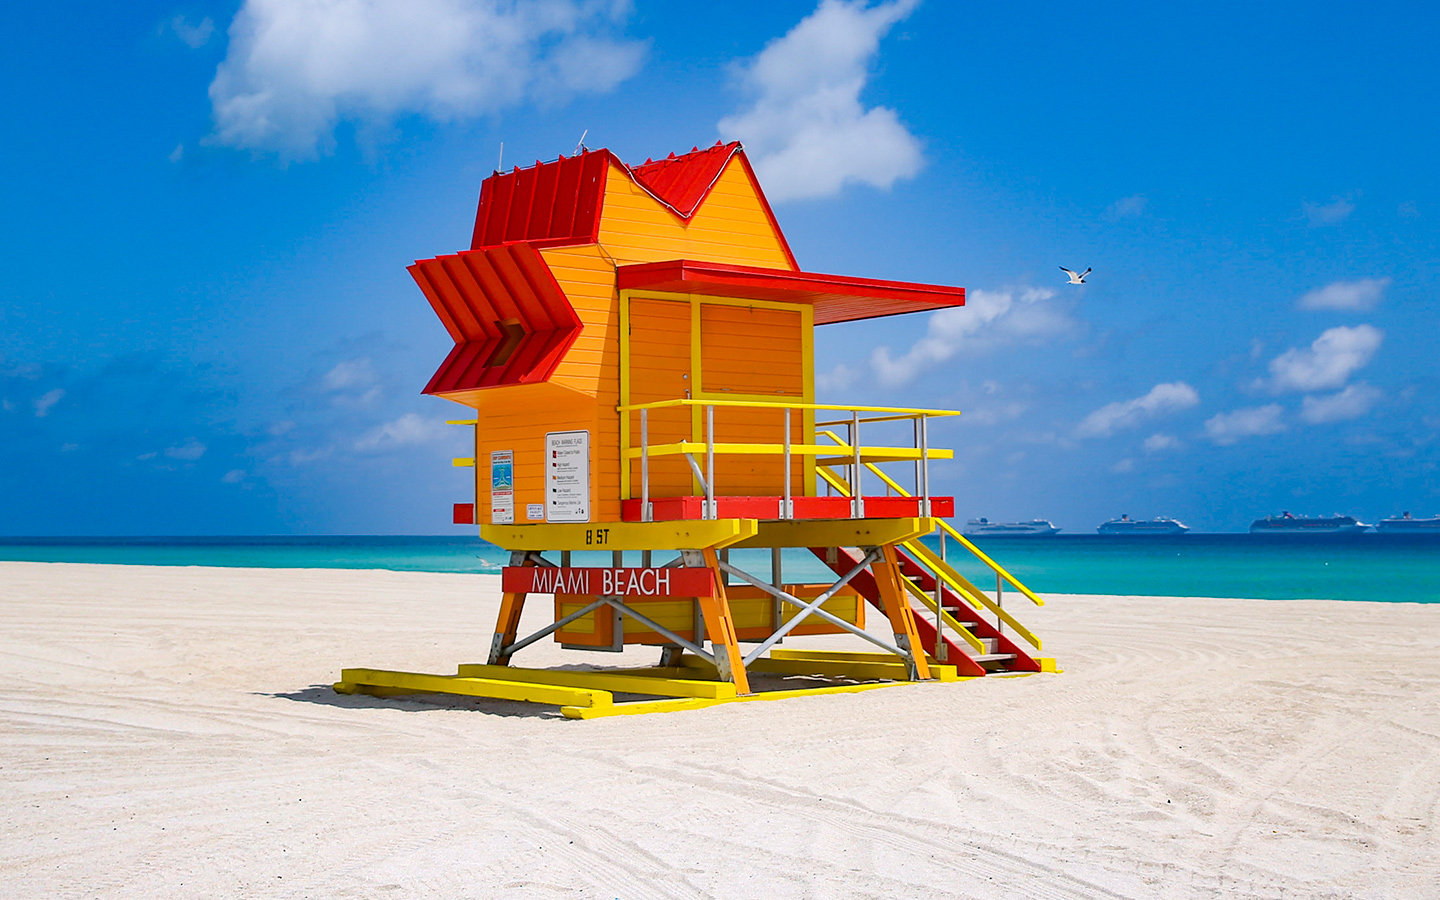 Orange lifeguard house on Miami Beach